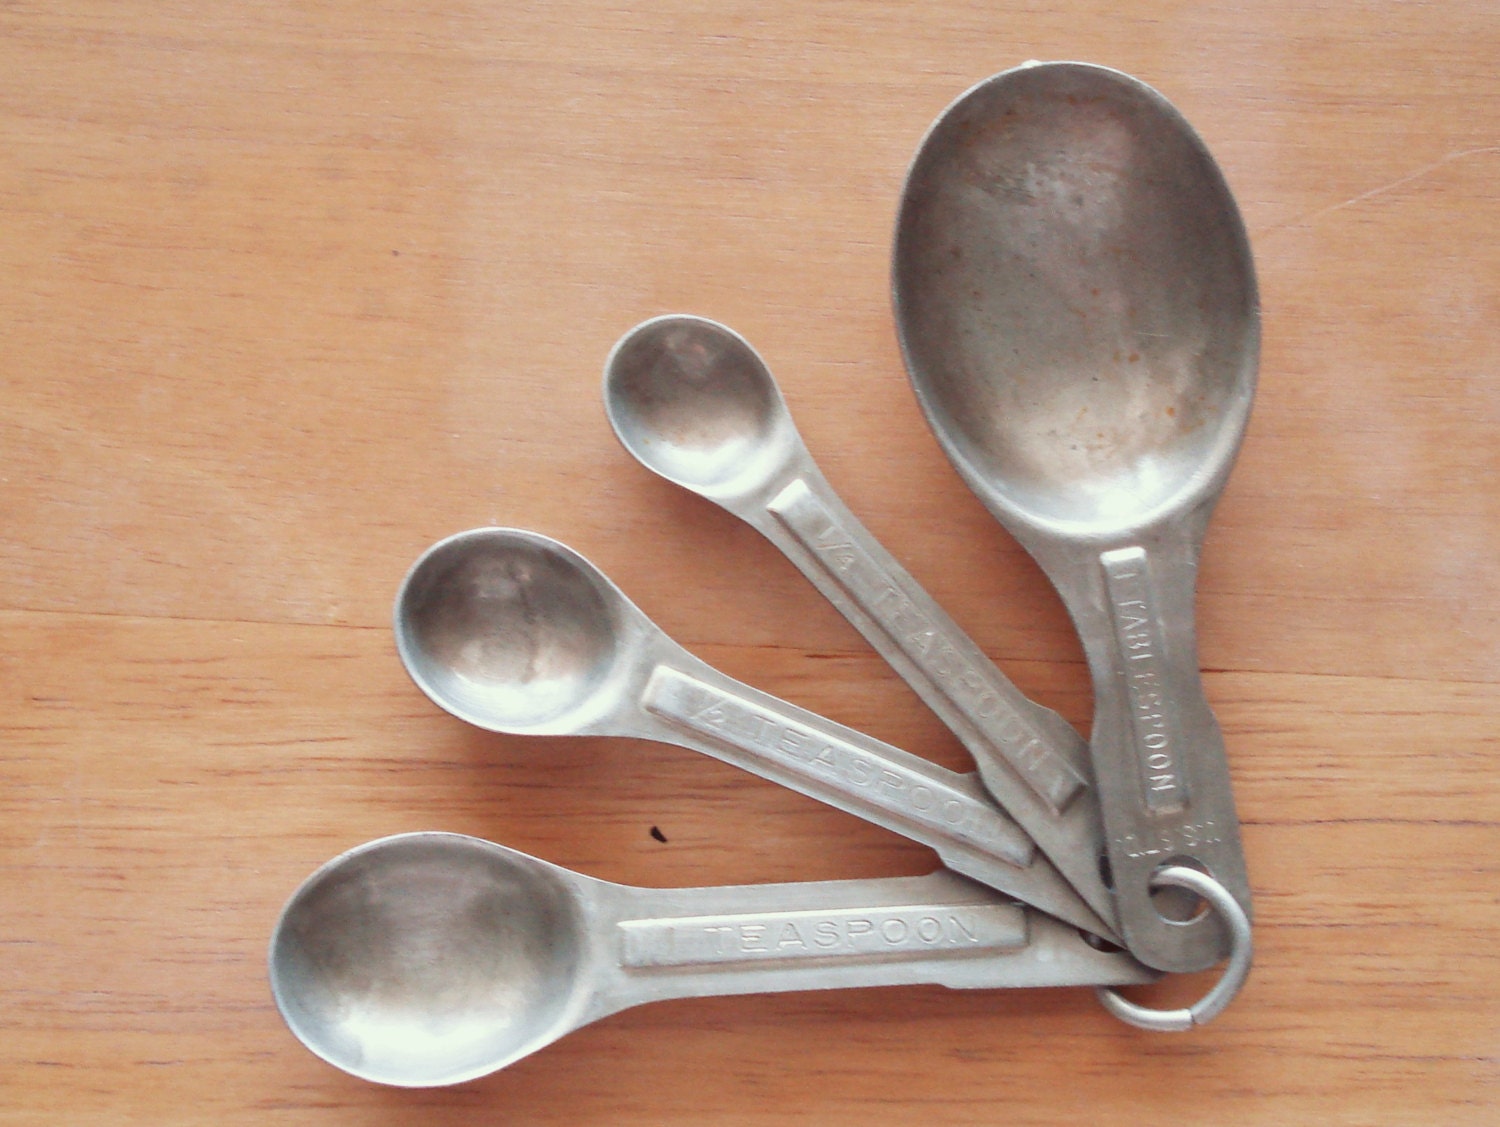 Vintage Metal Measuring Spoons From 1/4 Teaspoon to by npebaysale